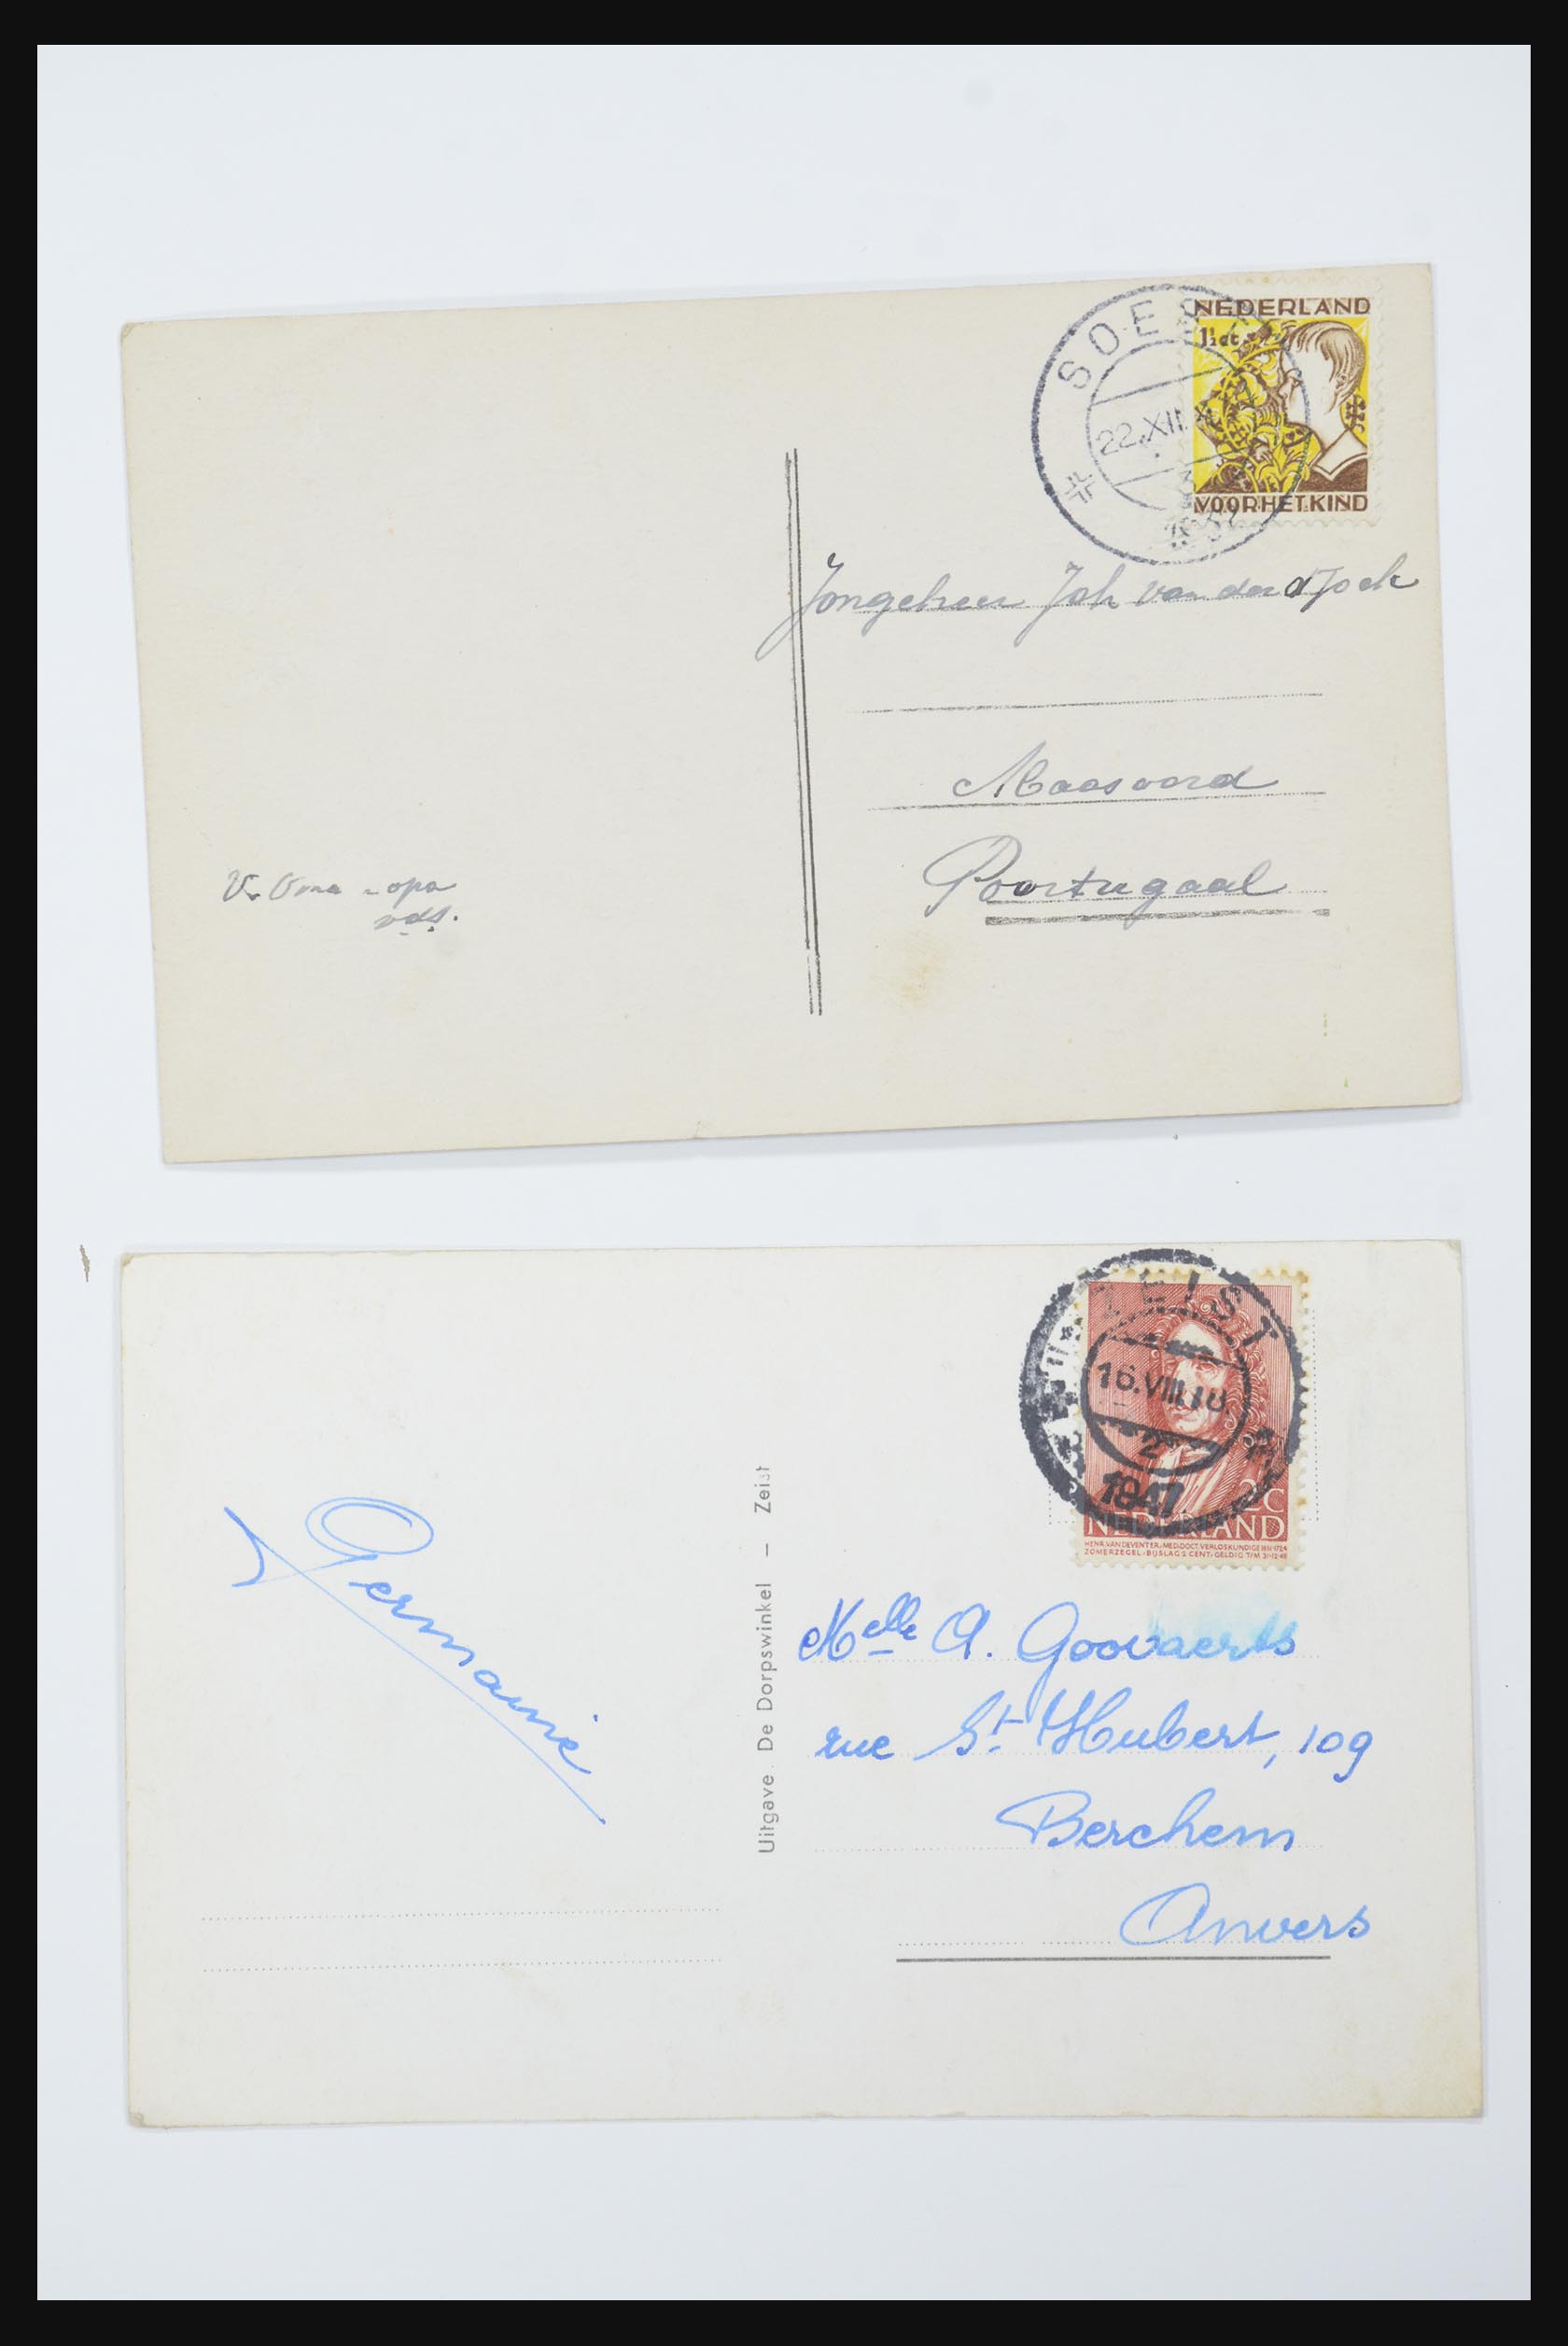 31668 029 - 31668 Nederland ansichtkaarten 1905-1935.